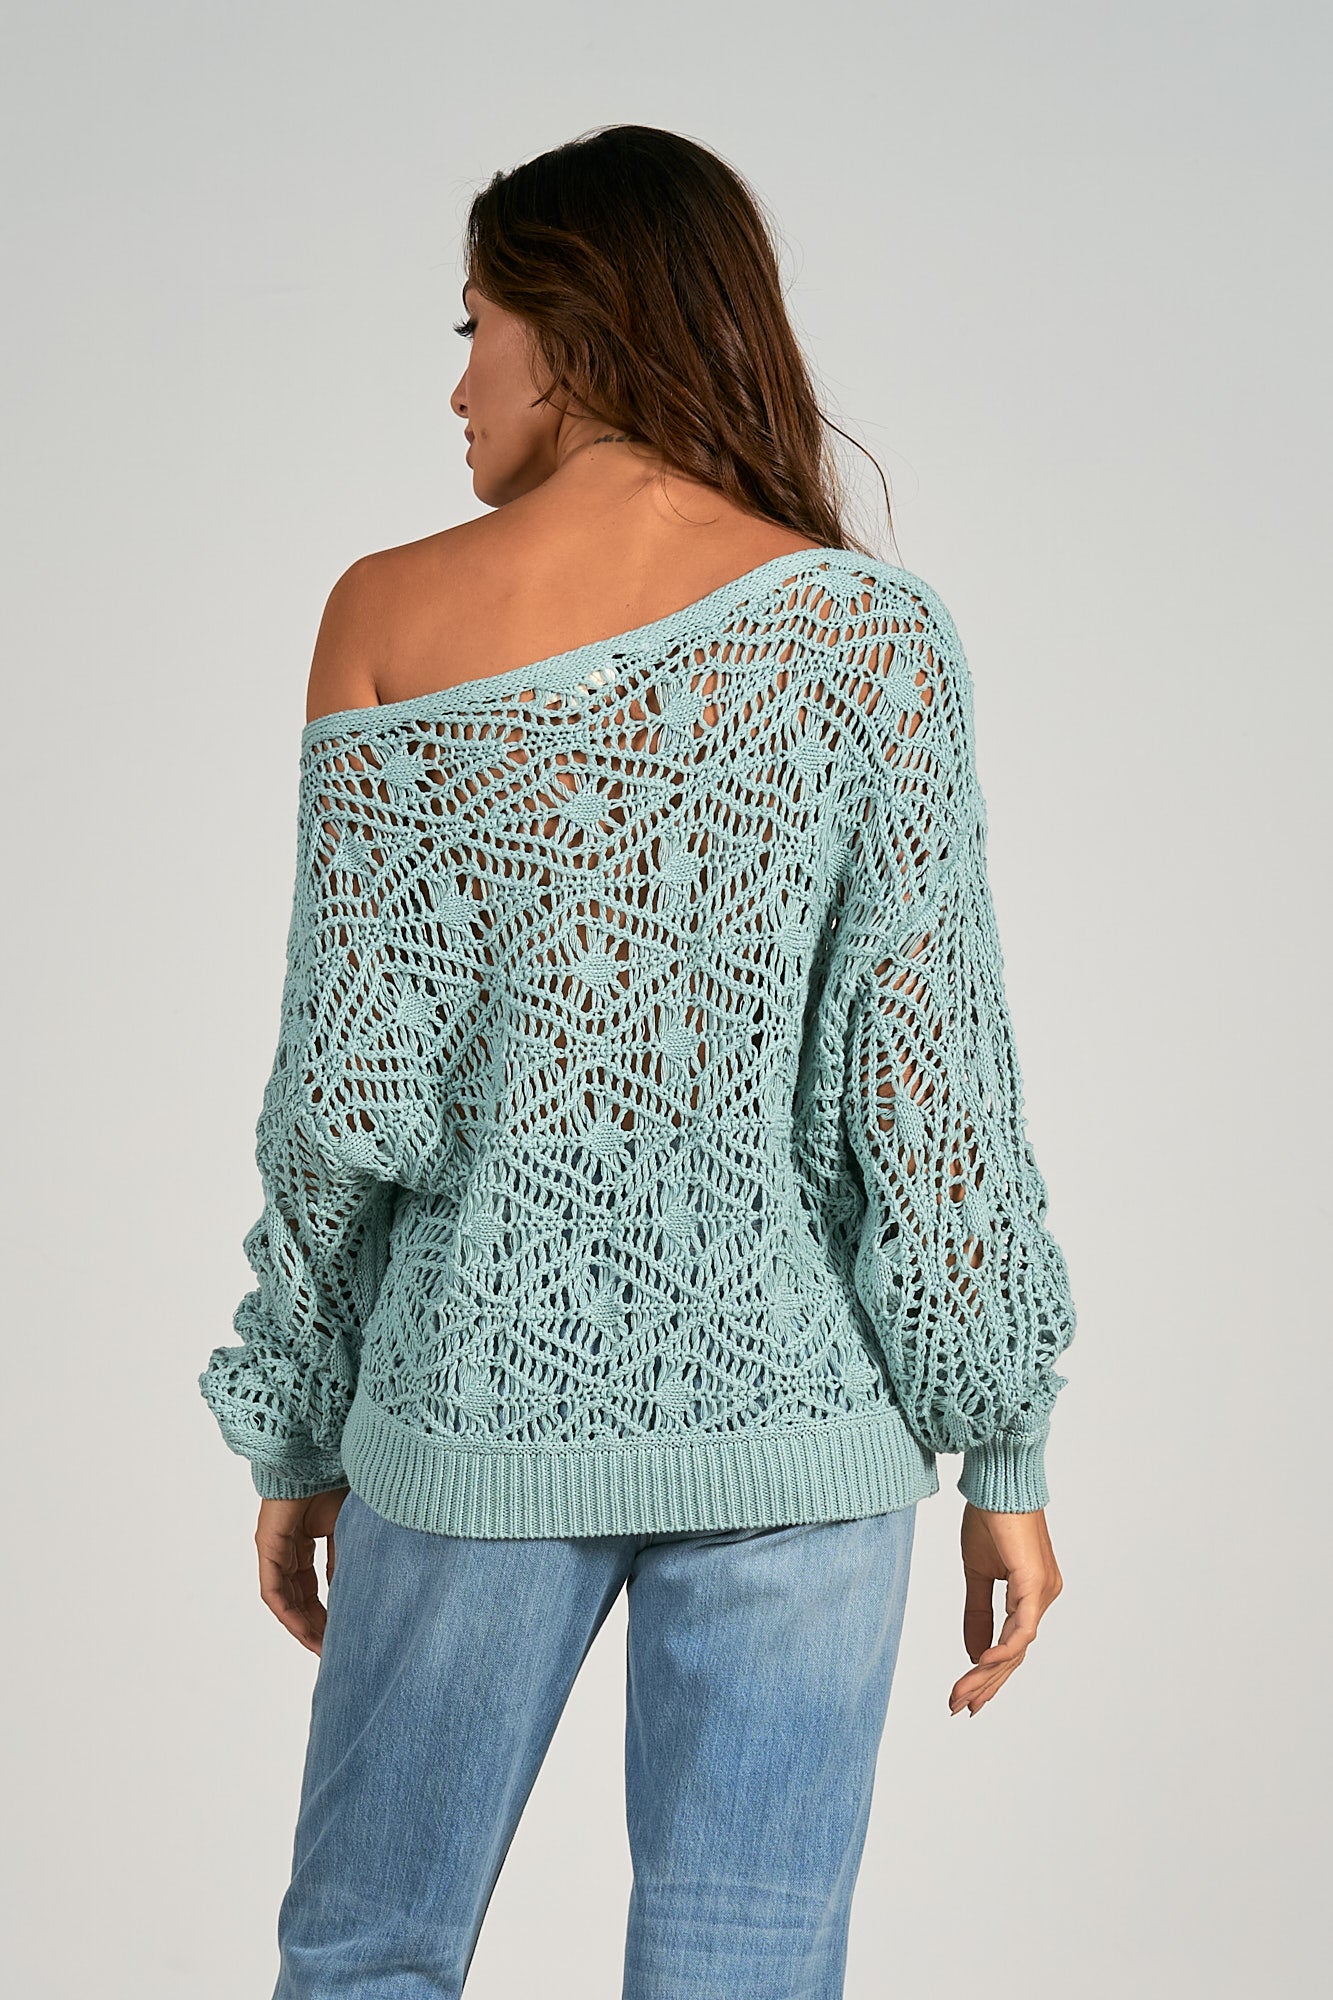 Spa Blue Slouchy Crochet Sweater